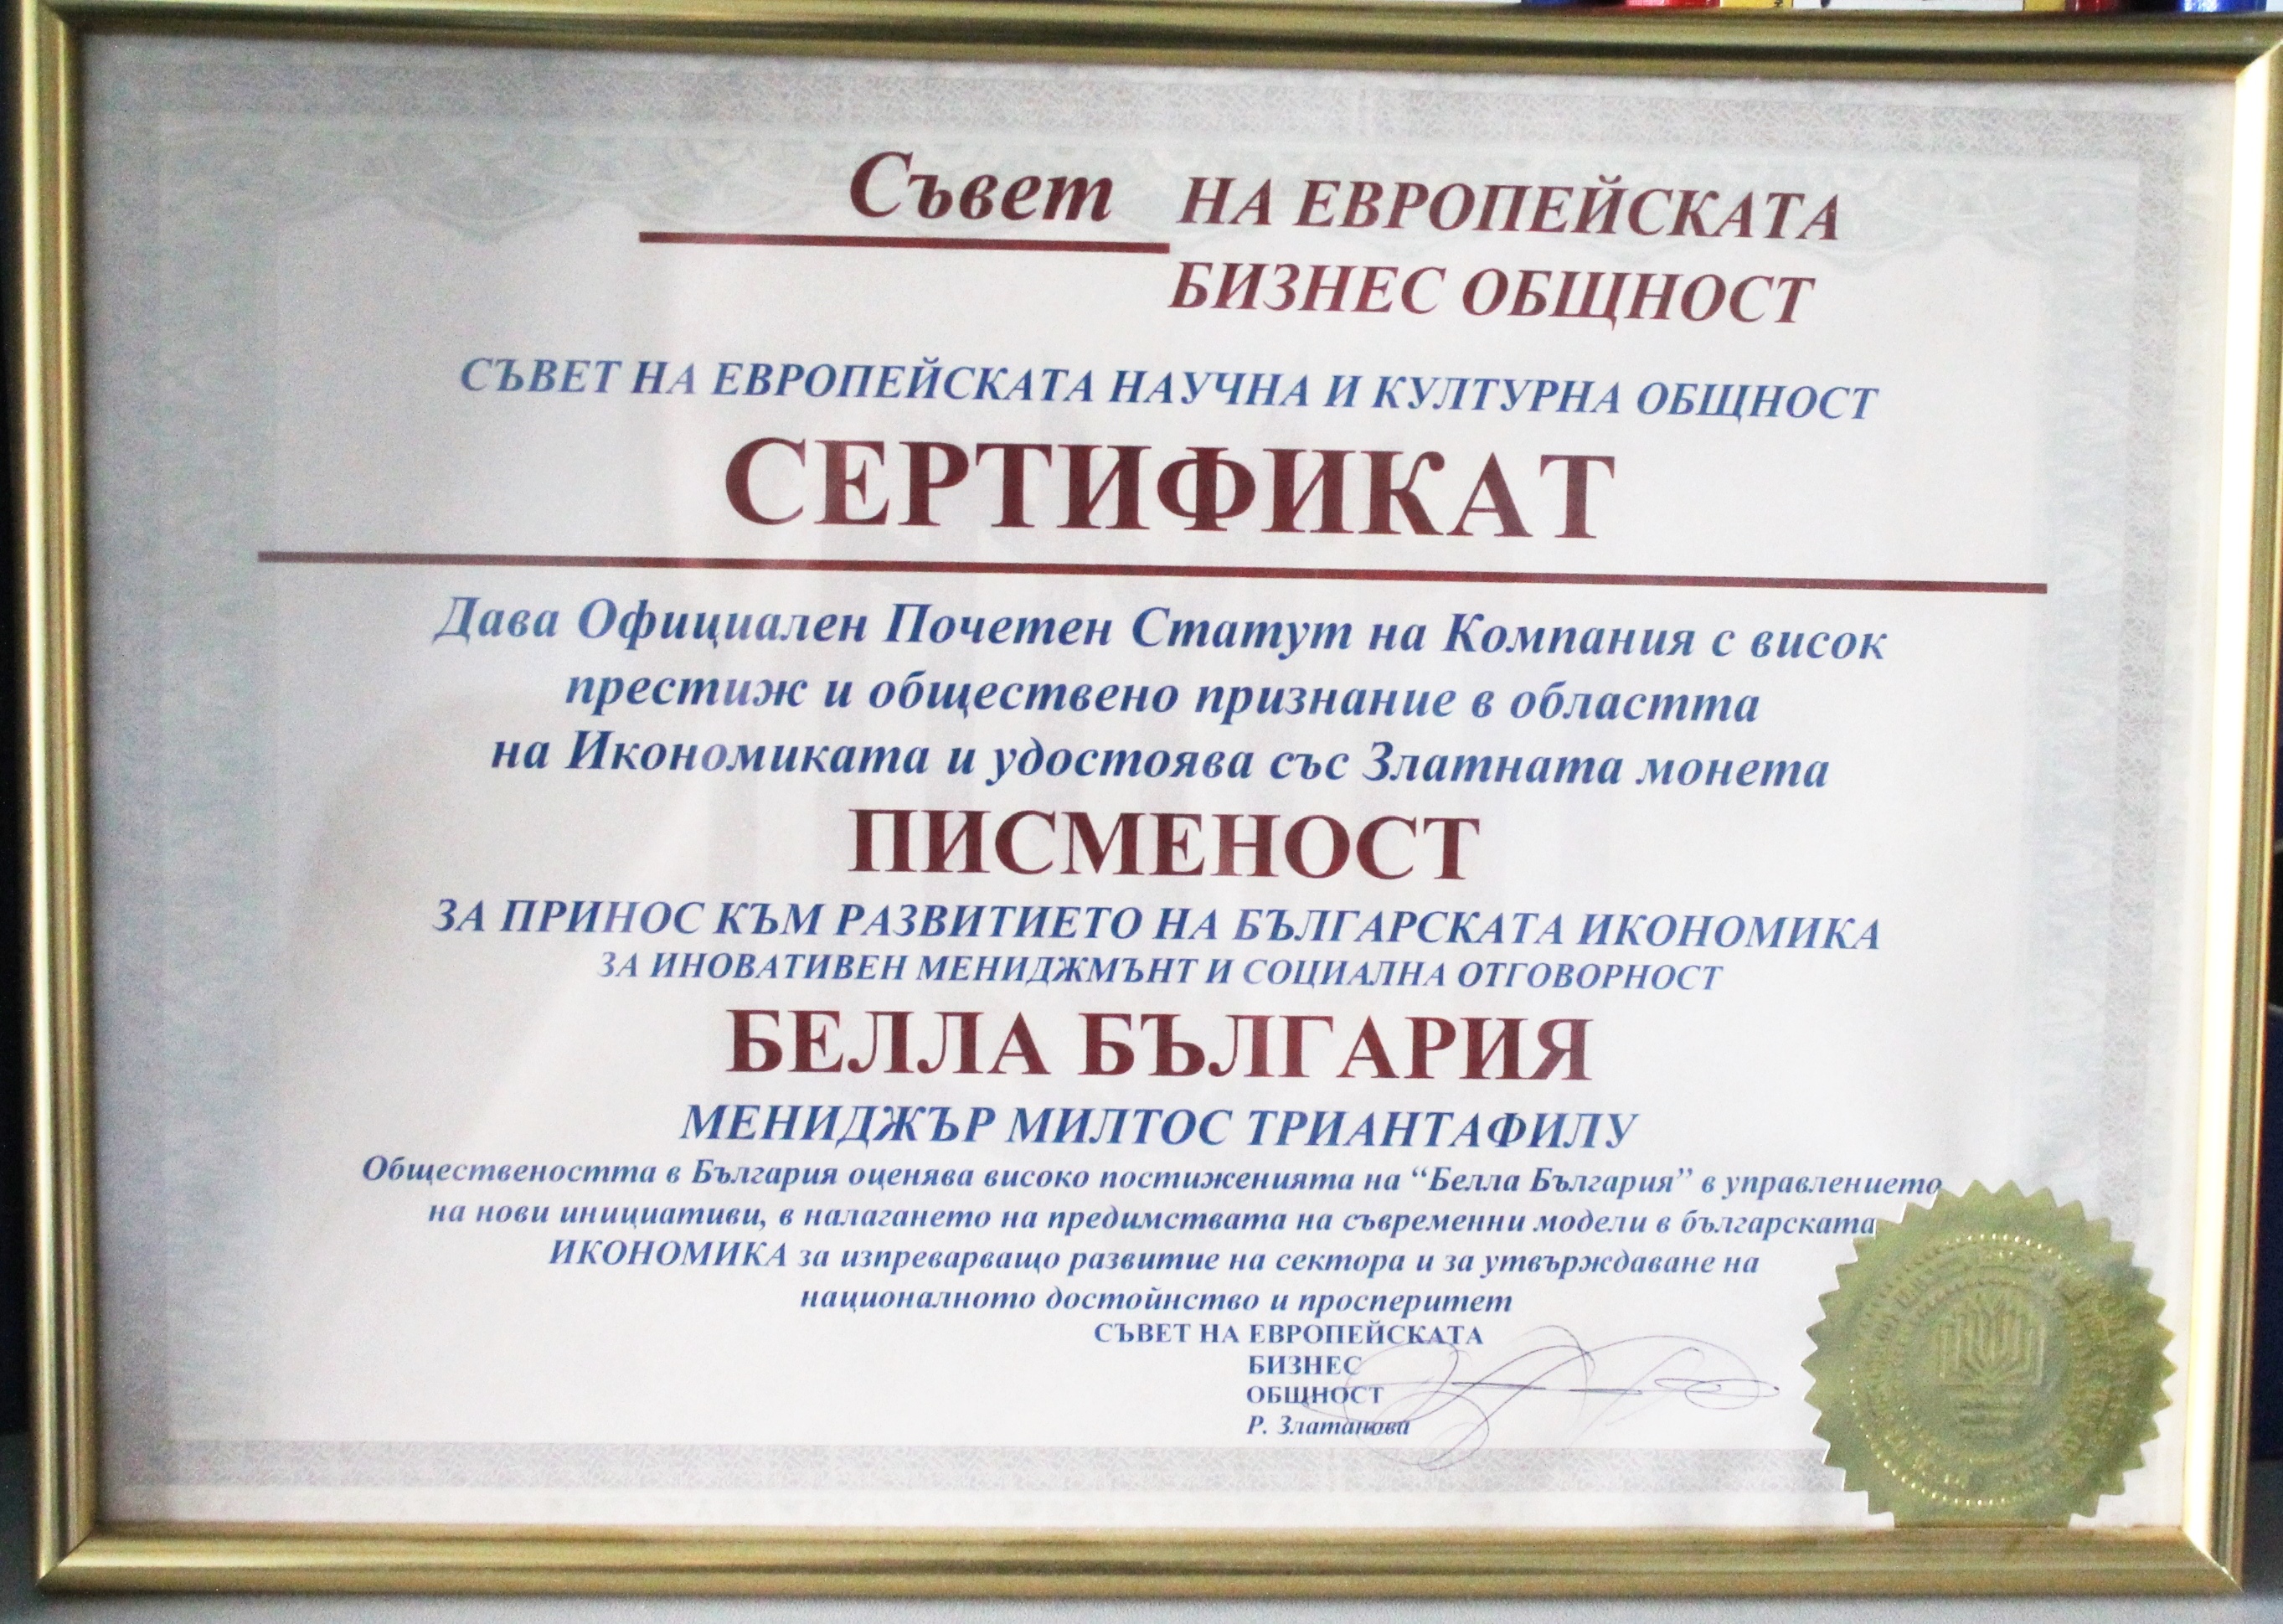 Златната монета за принос към развитието на българската икономика, 2013